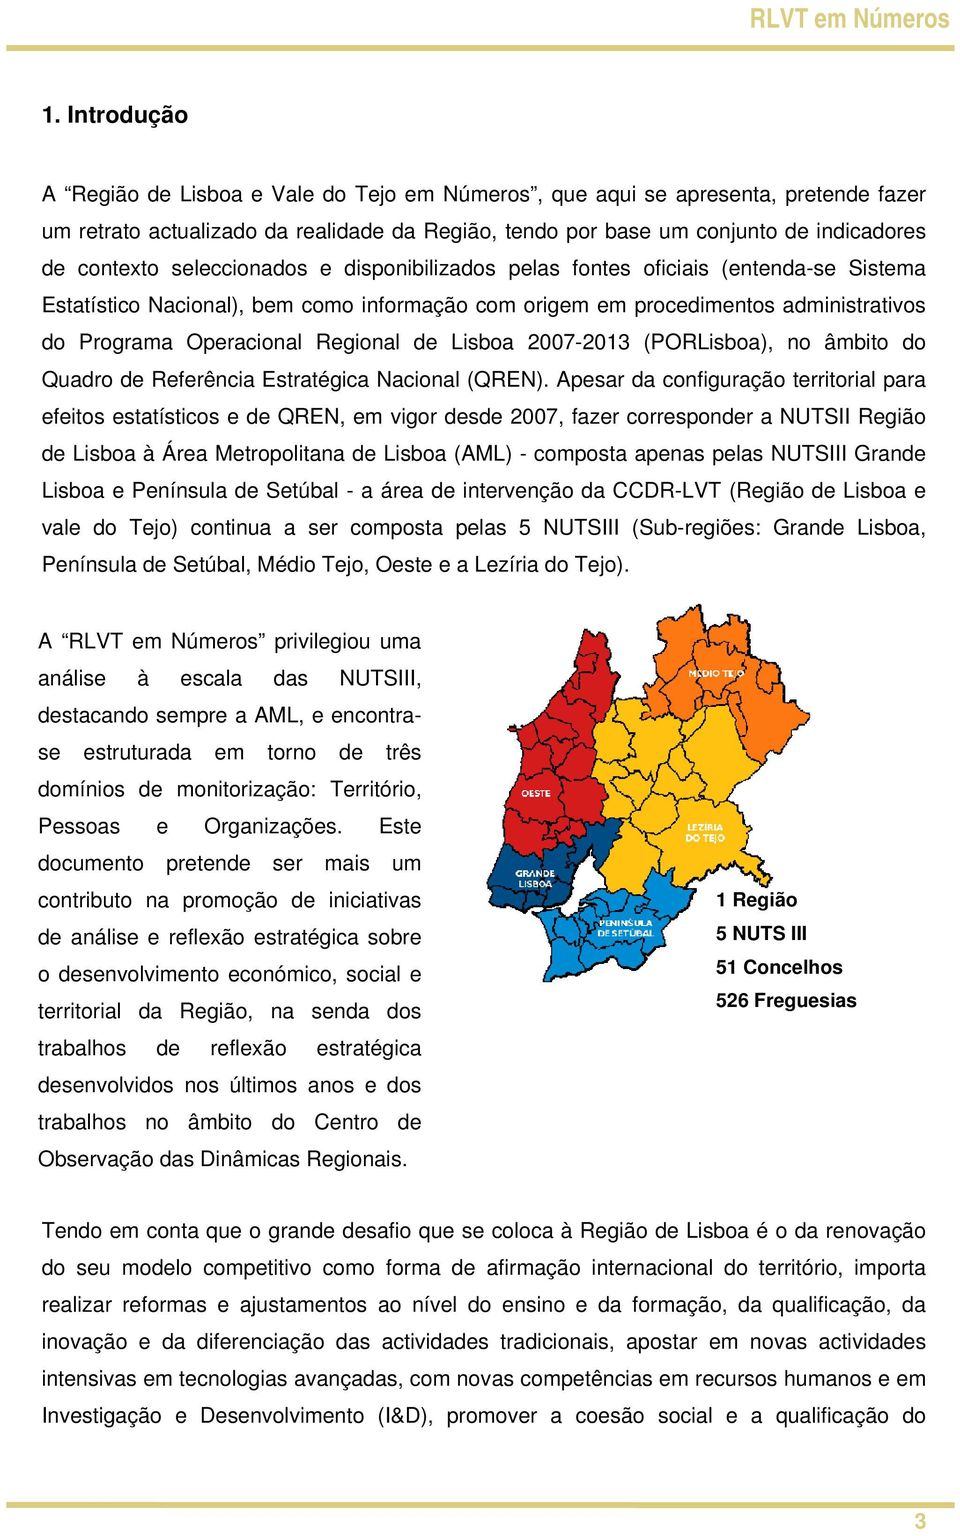 Lisboa 2007-2013 (PORLisboa), no âmbito do Quadro de Referência Estratégica Nacional (QREN).